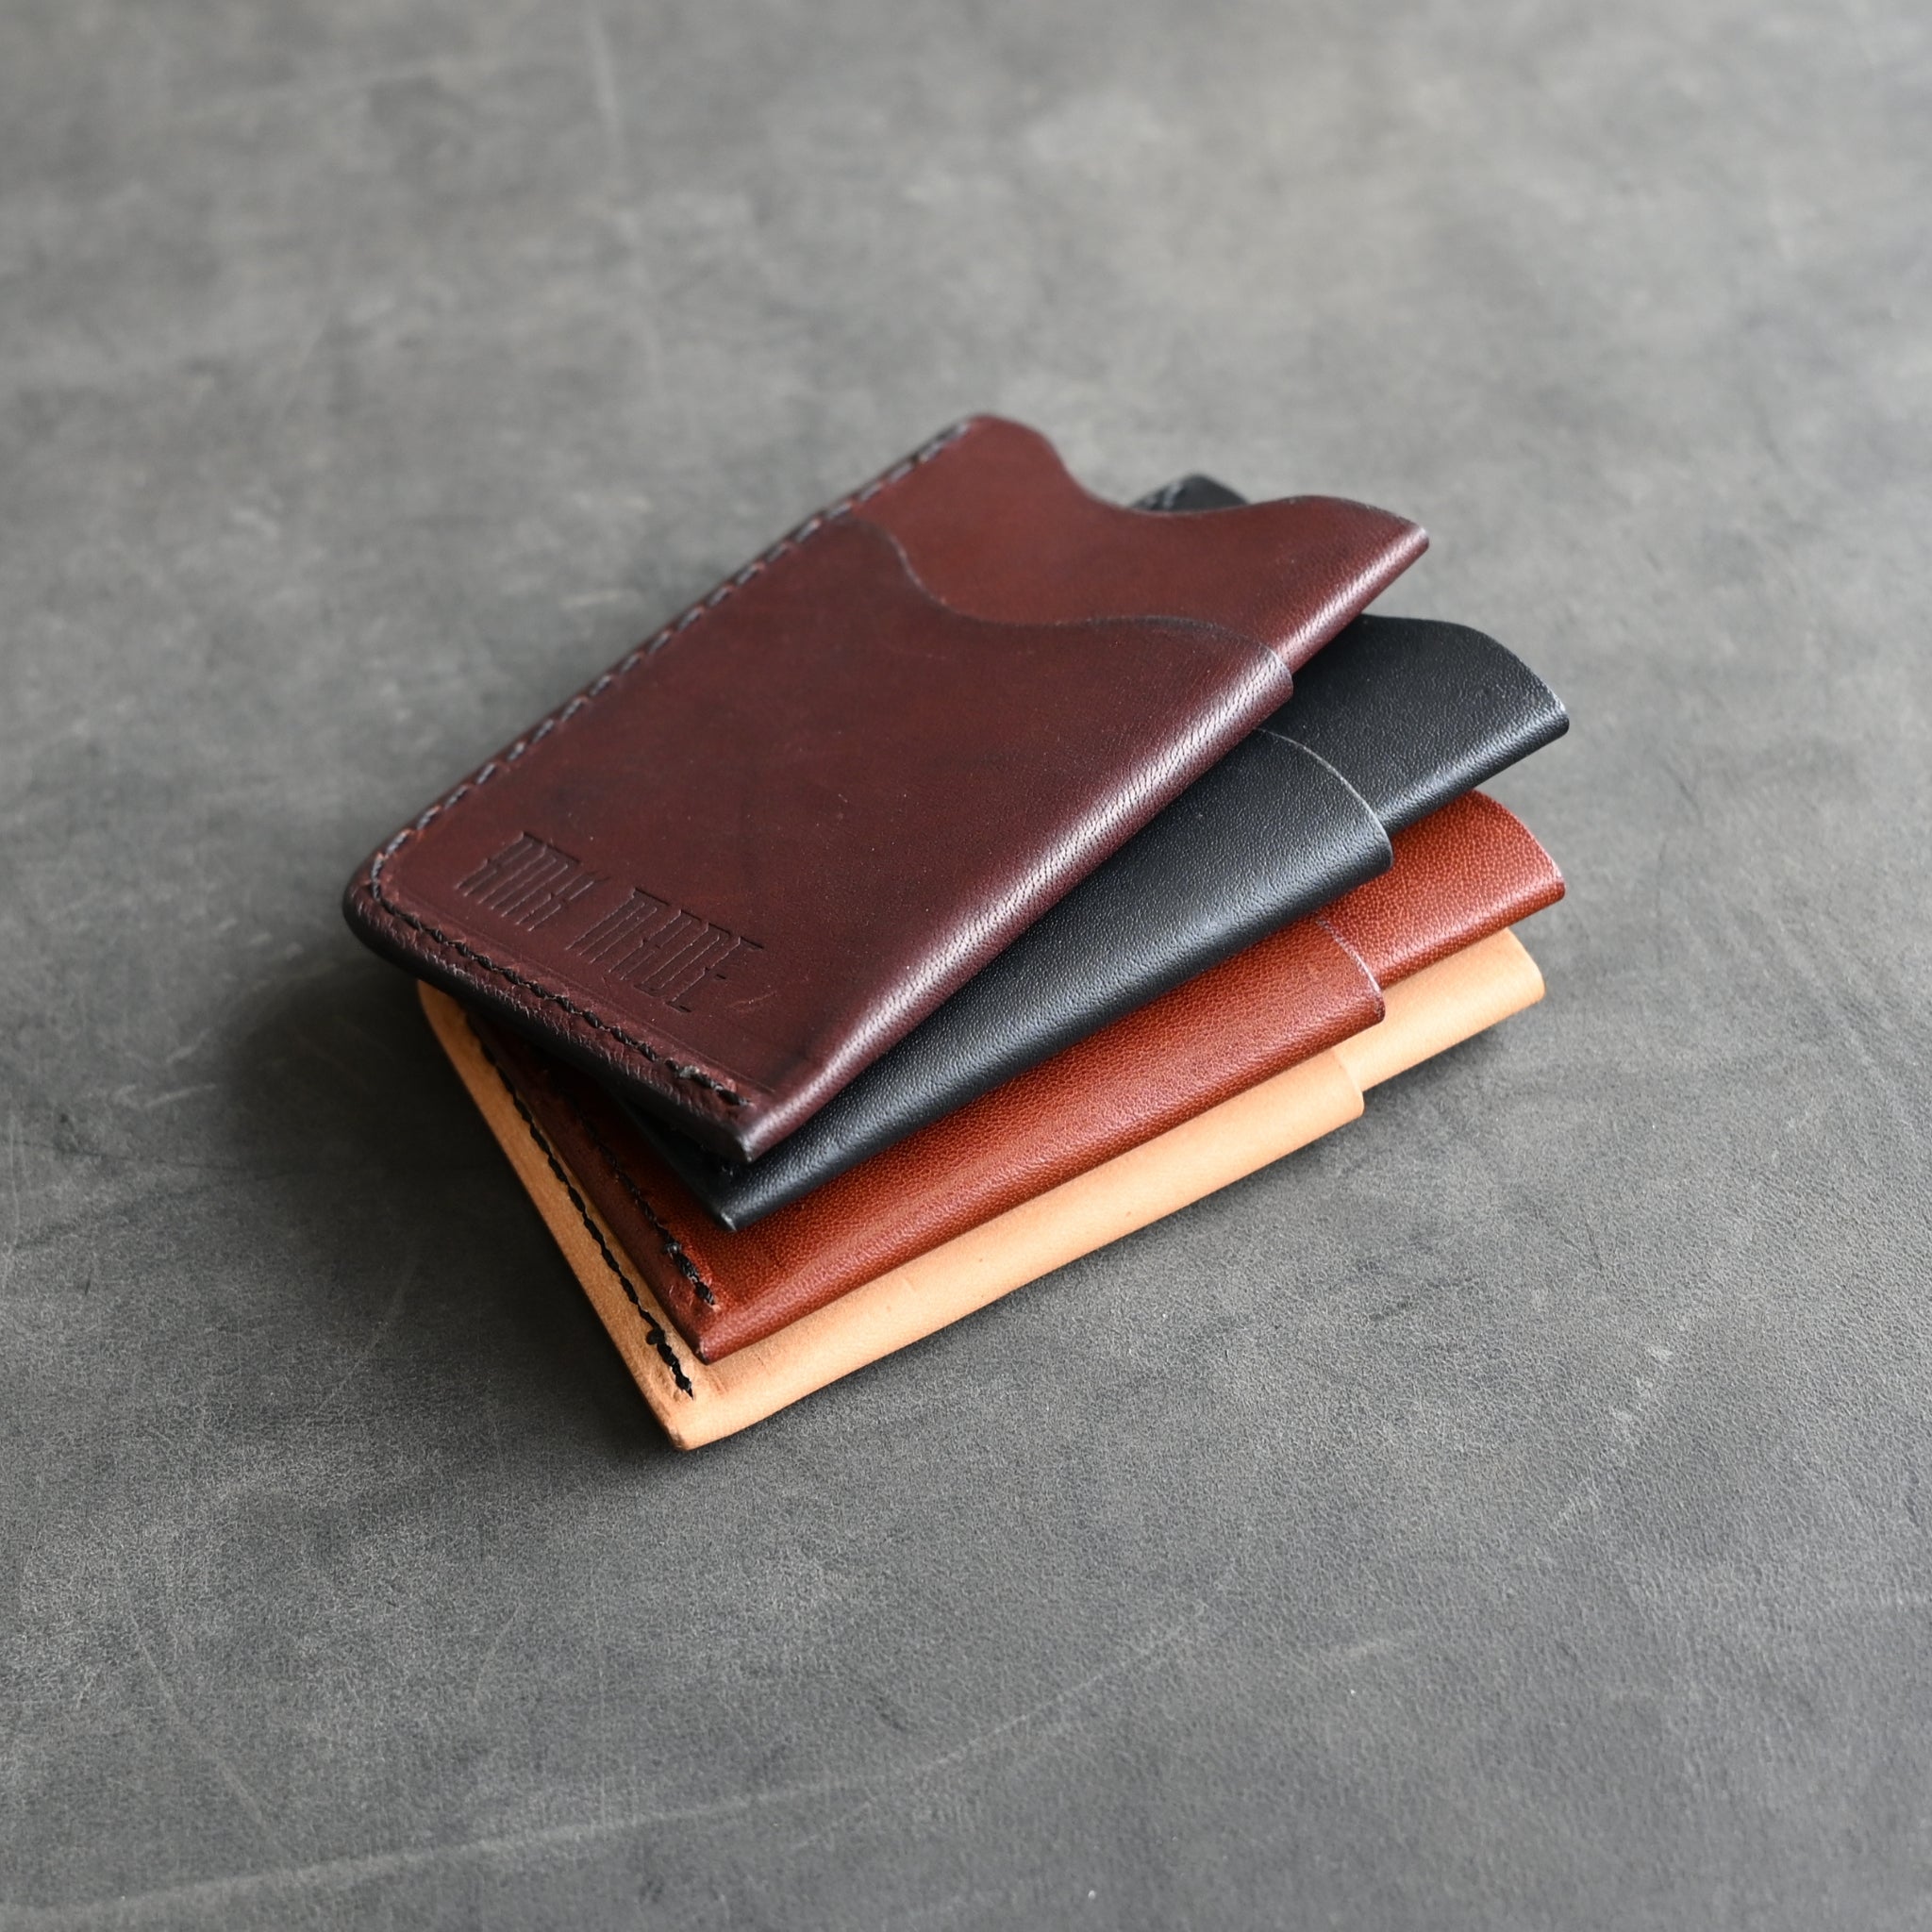 RMK Kangaroo Leather Card Wallet